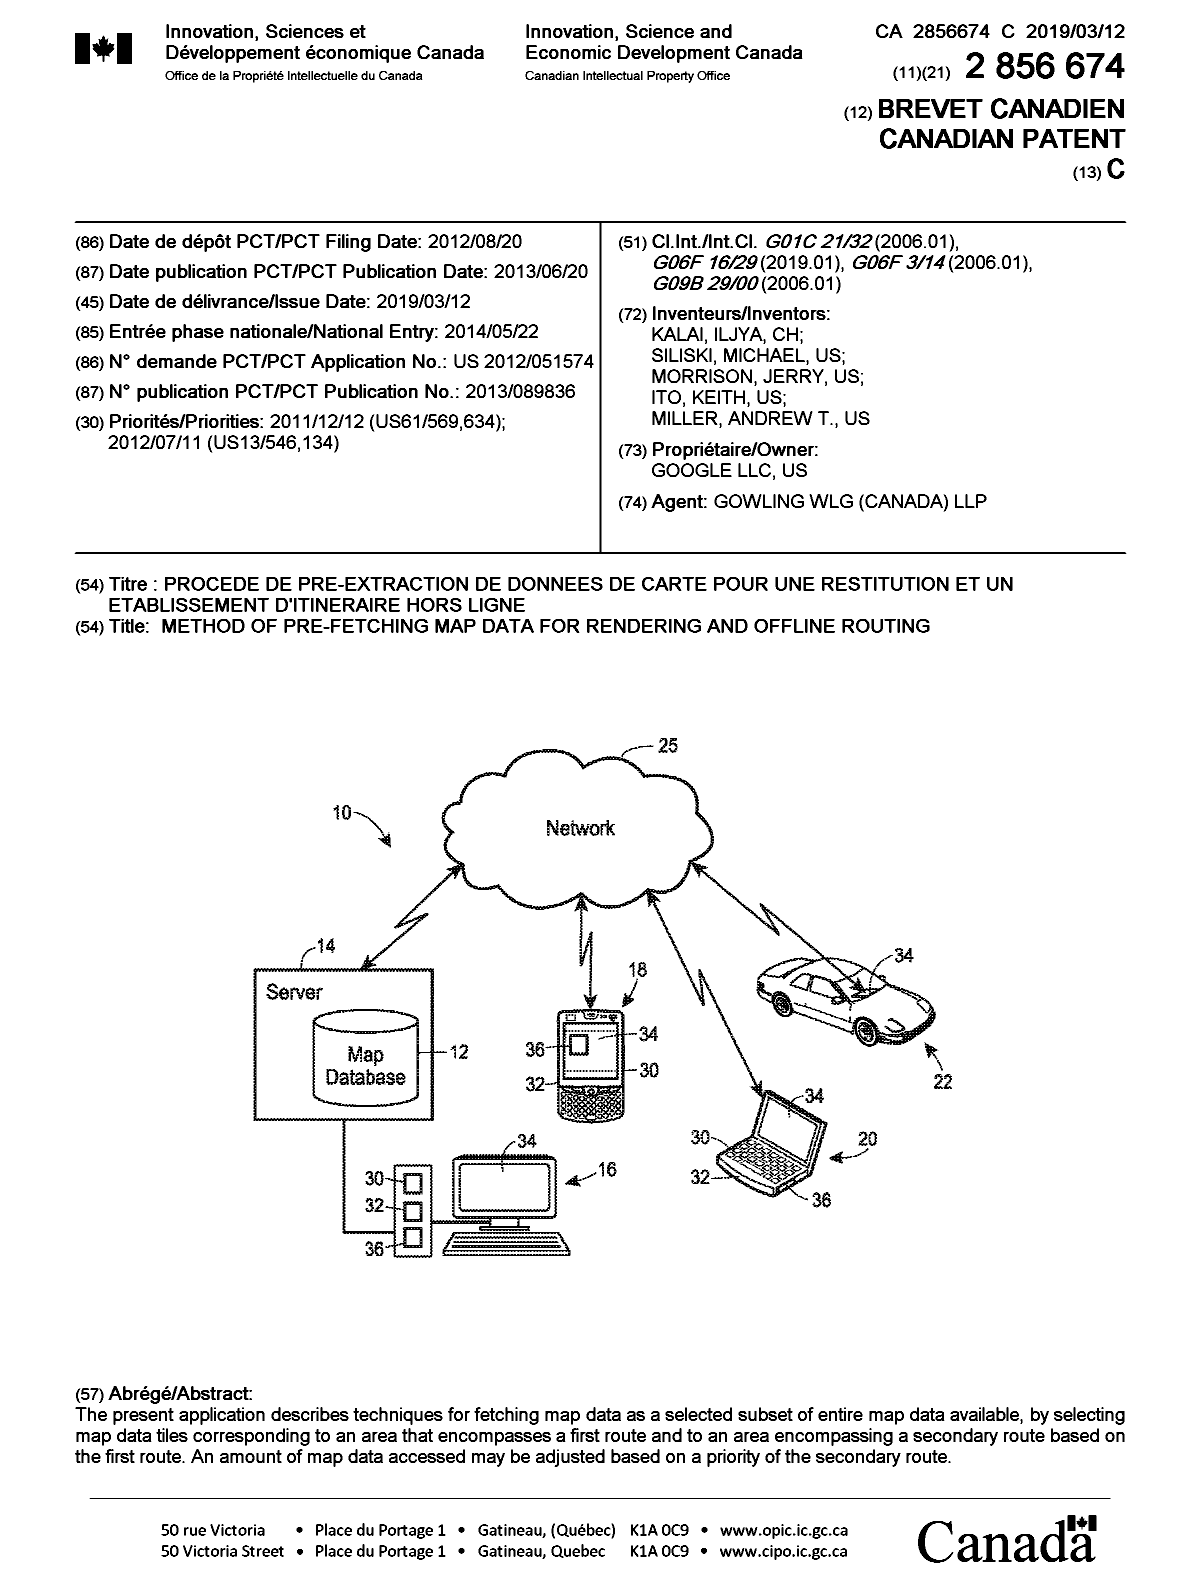 Document de brevet canadien 2856674. Page couverture 20190212. Image 1 de 1